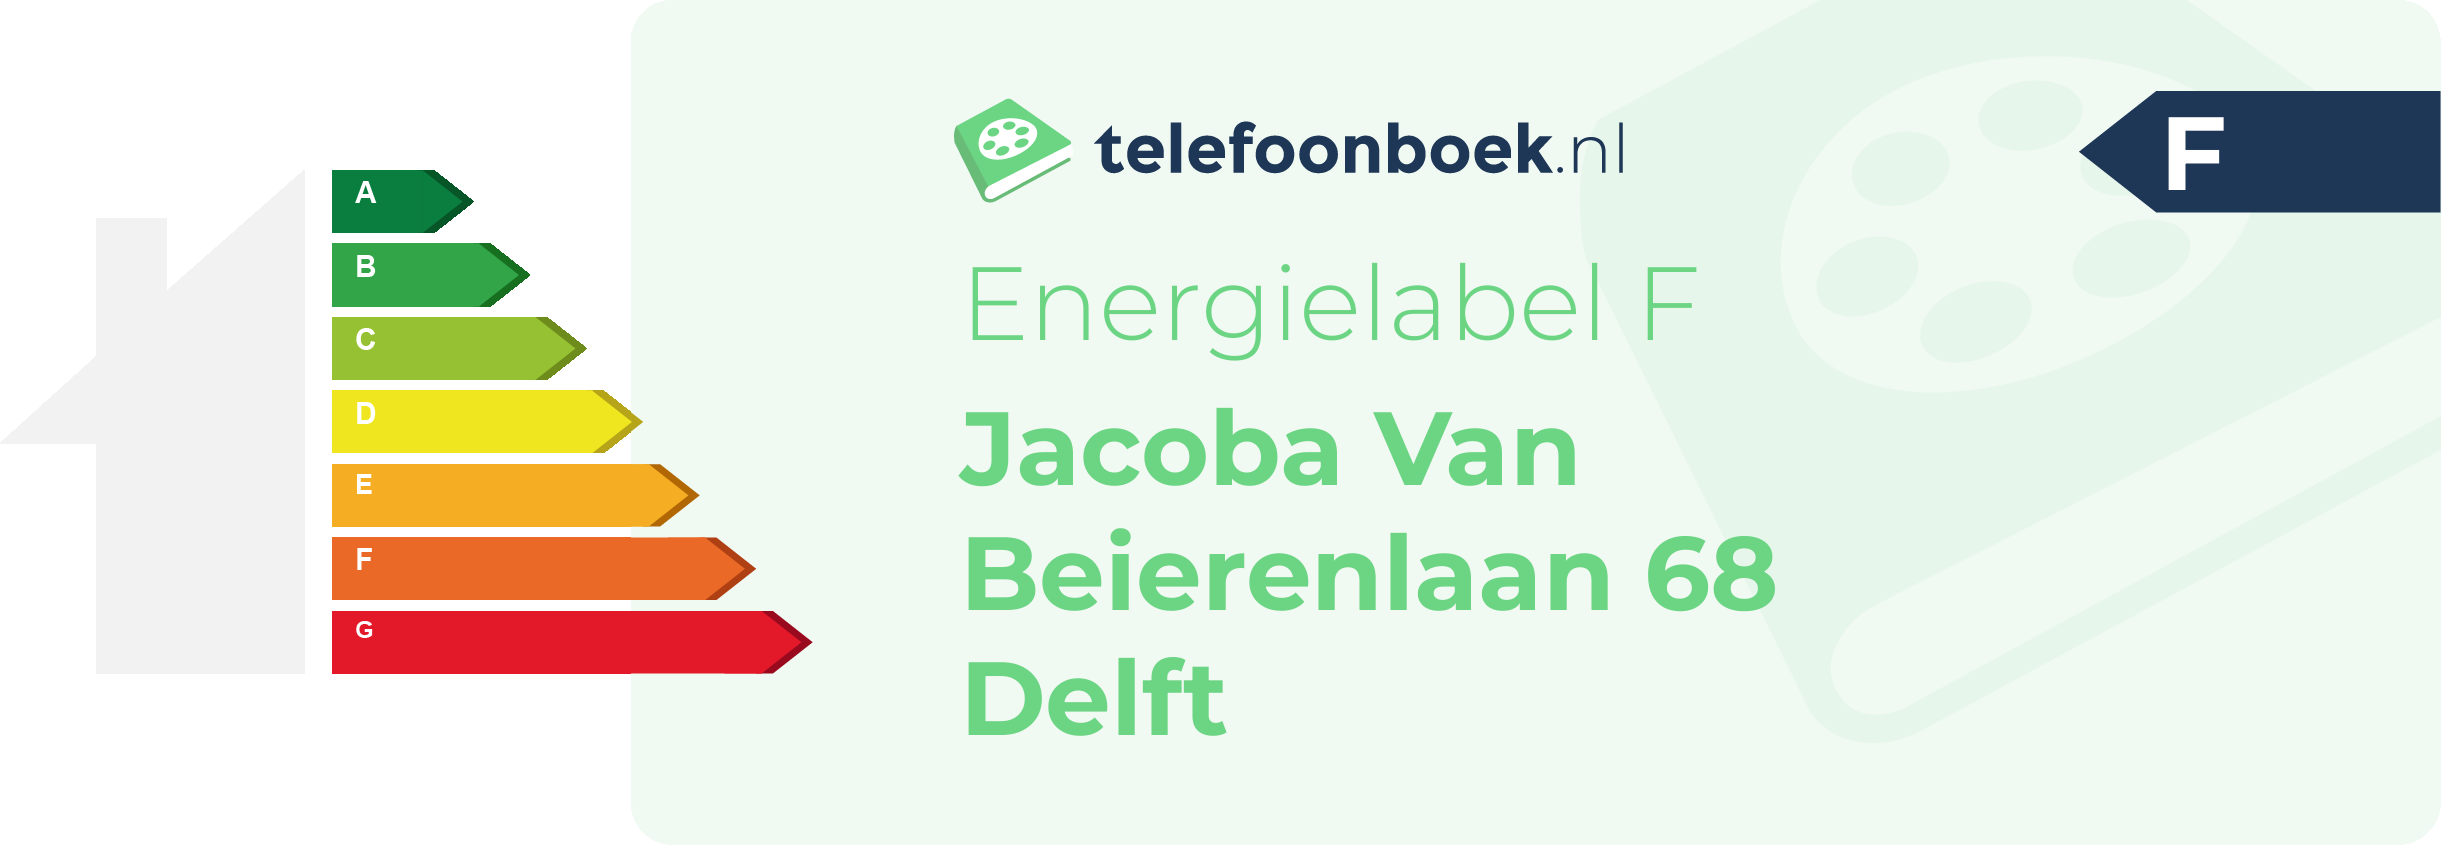 Energielabel Jacoba Van Beierenlaan 68 Delft